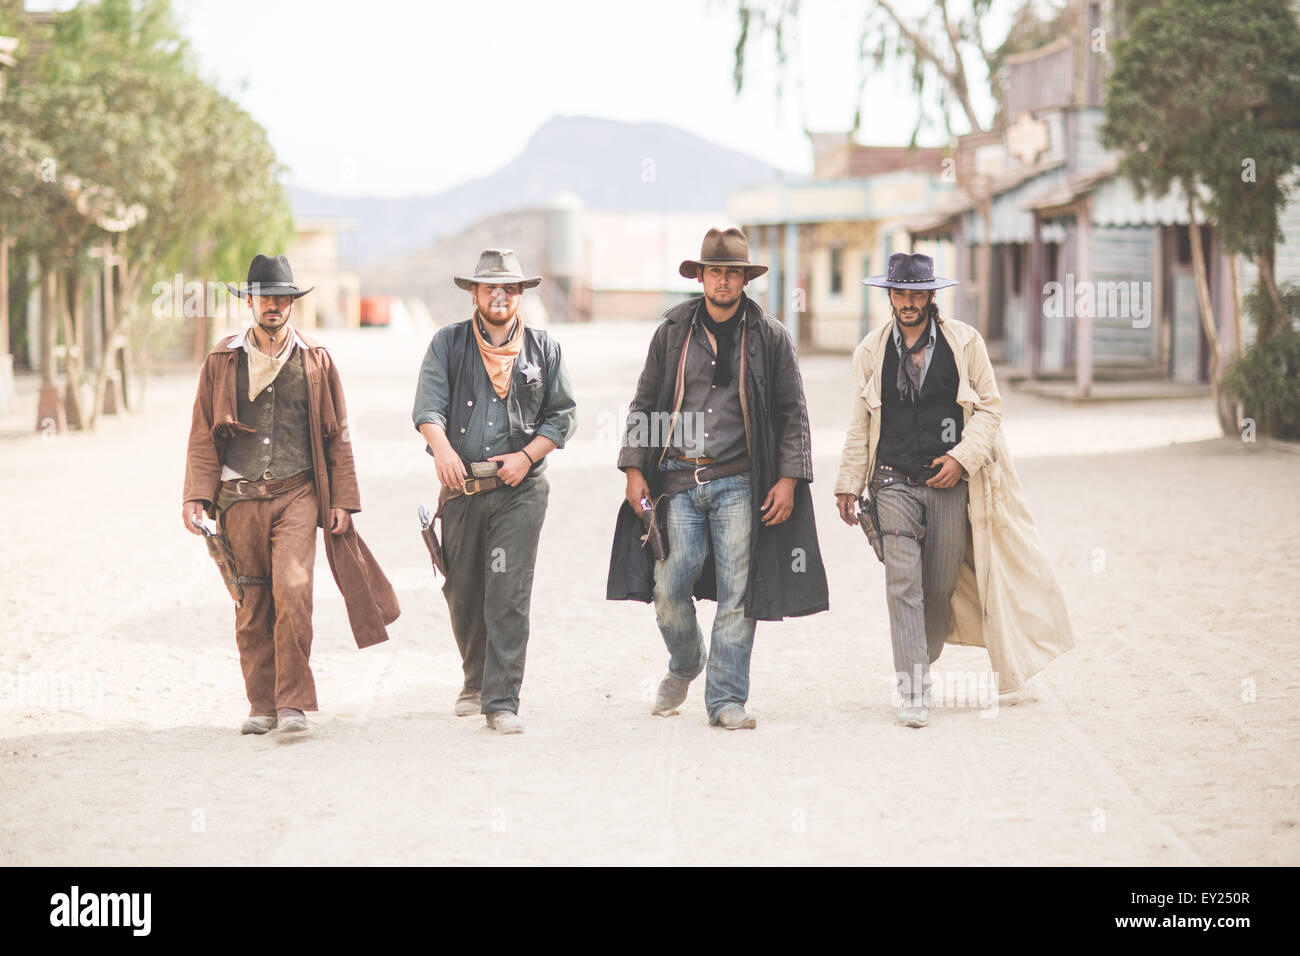 Porträt von vier Cowboys zu Fuß entlang der Straße im wilden Westen Film eingestellt, Fort Bravo, Tabernas, Almeria, Spanien Stockfoto